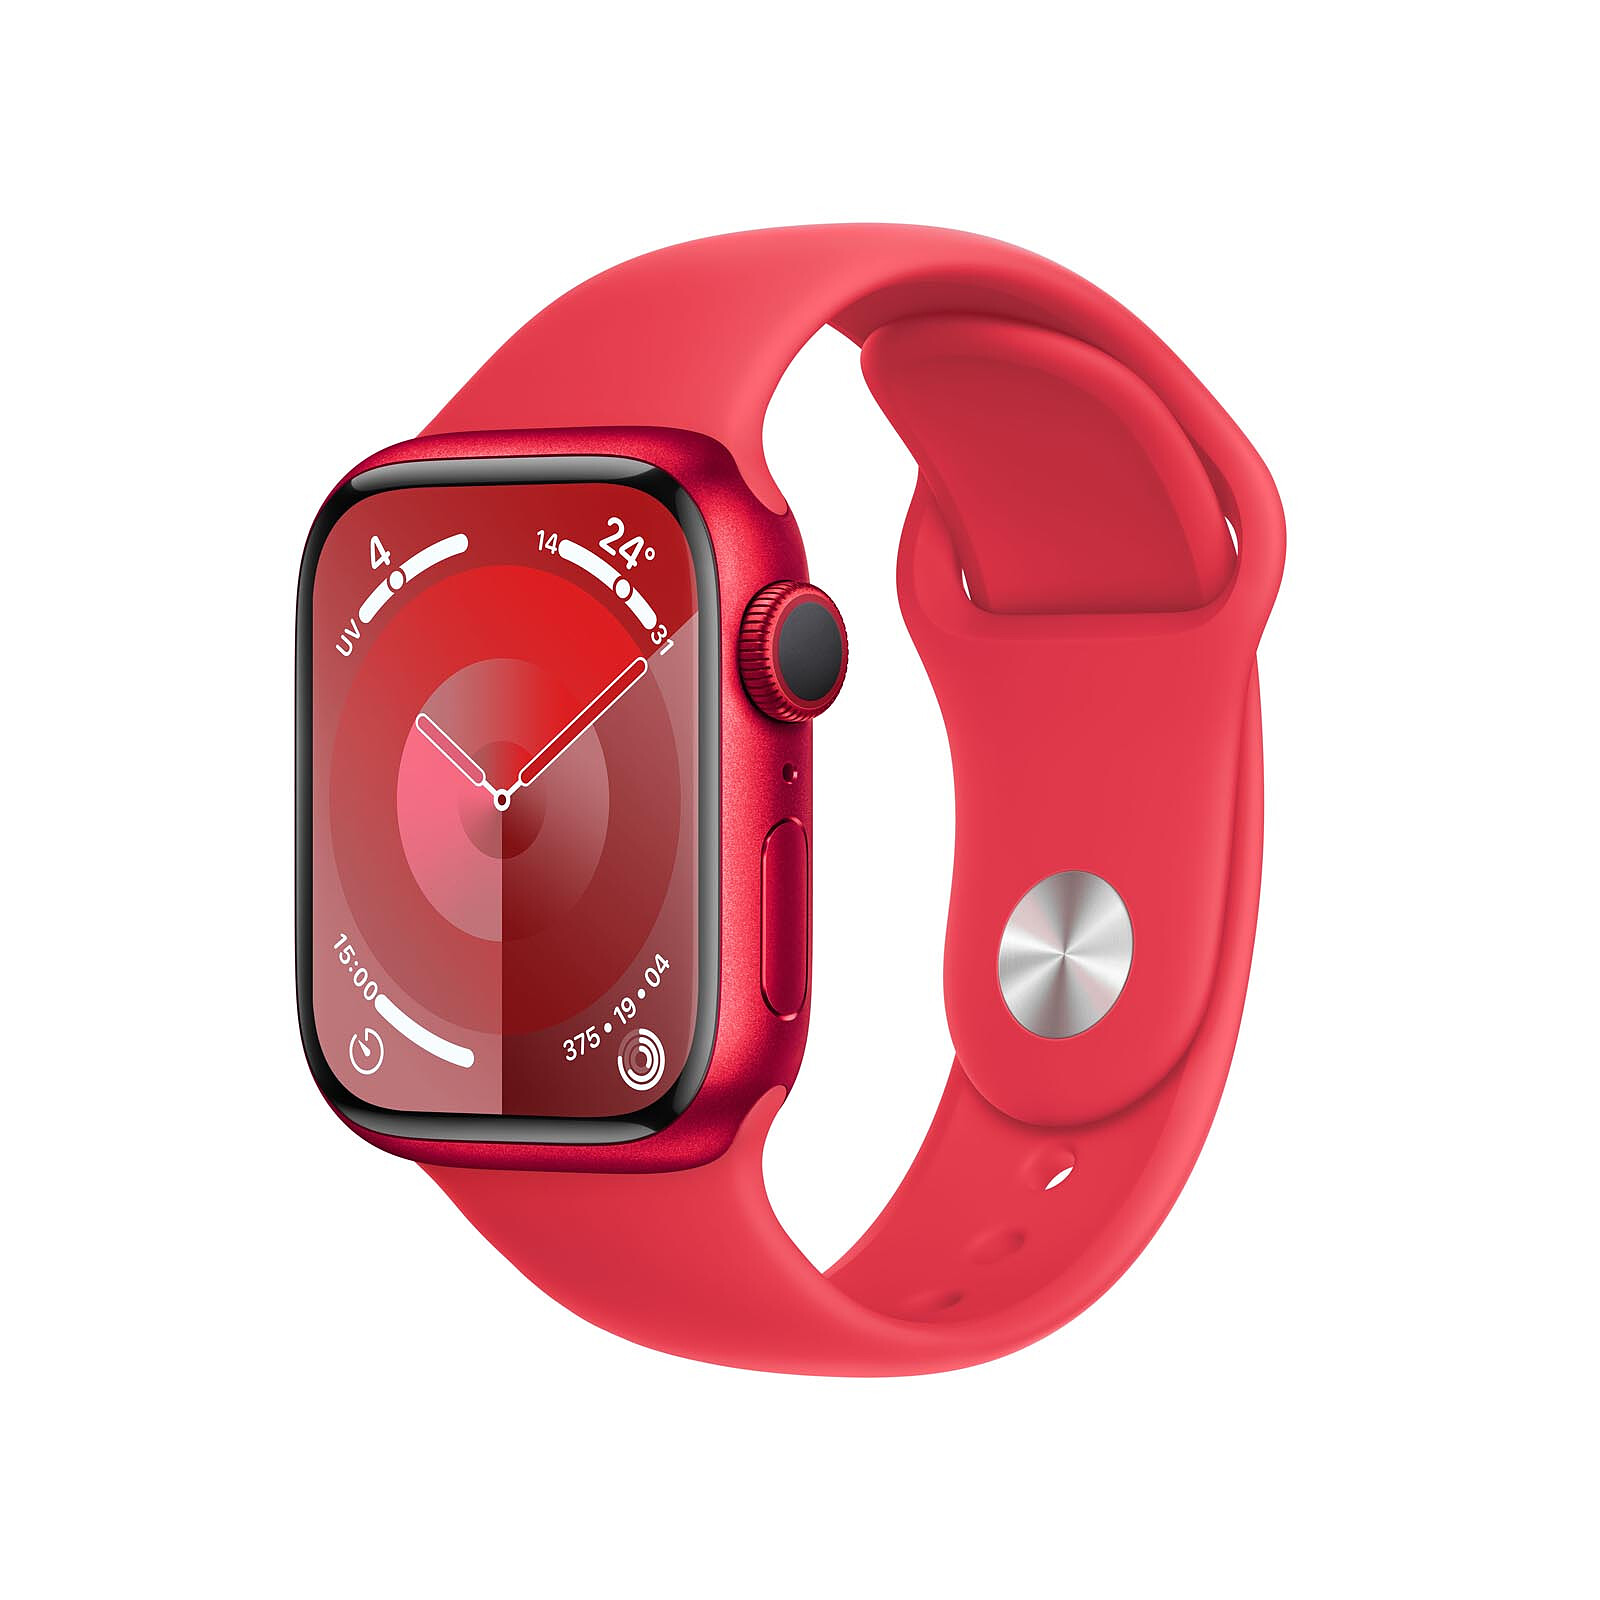 Apple Watch SE (2e génération) : fiche technique complète, prix et avis